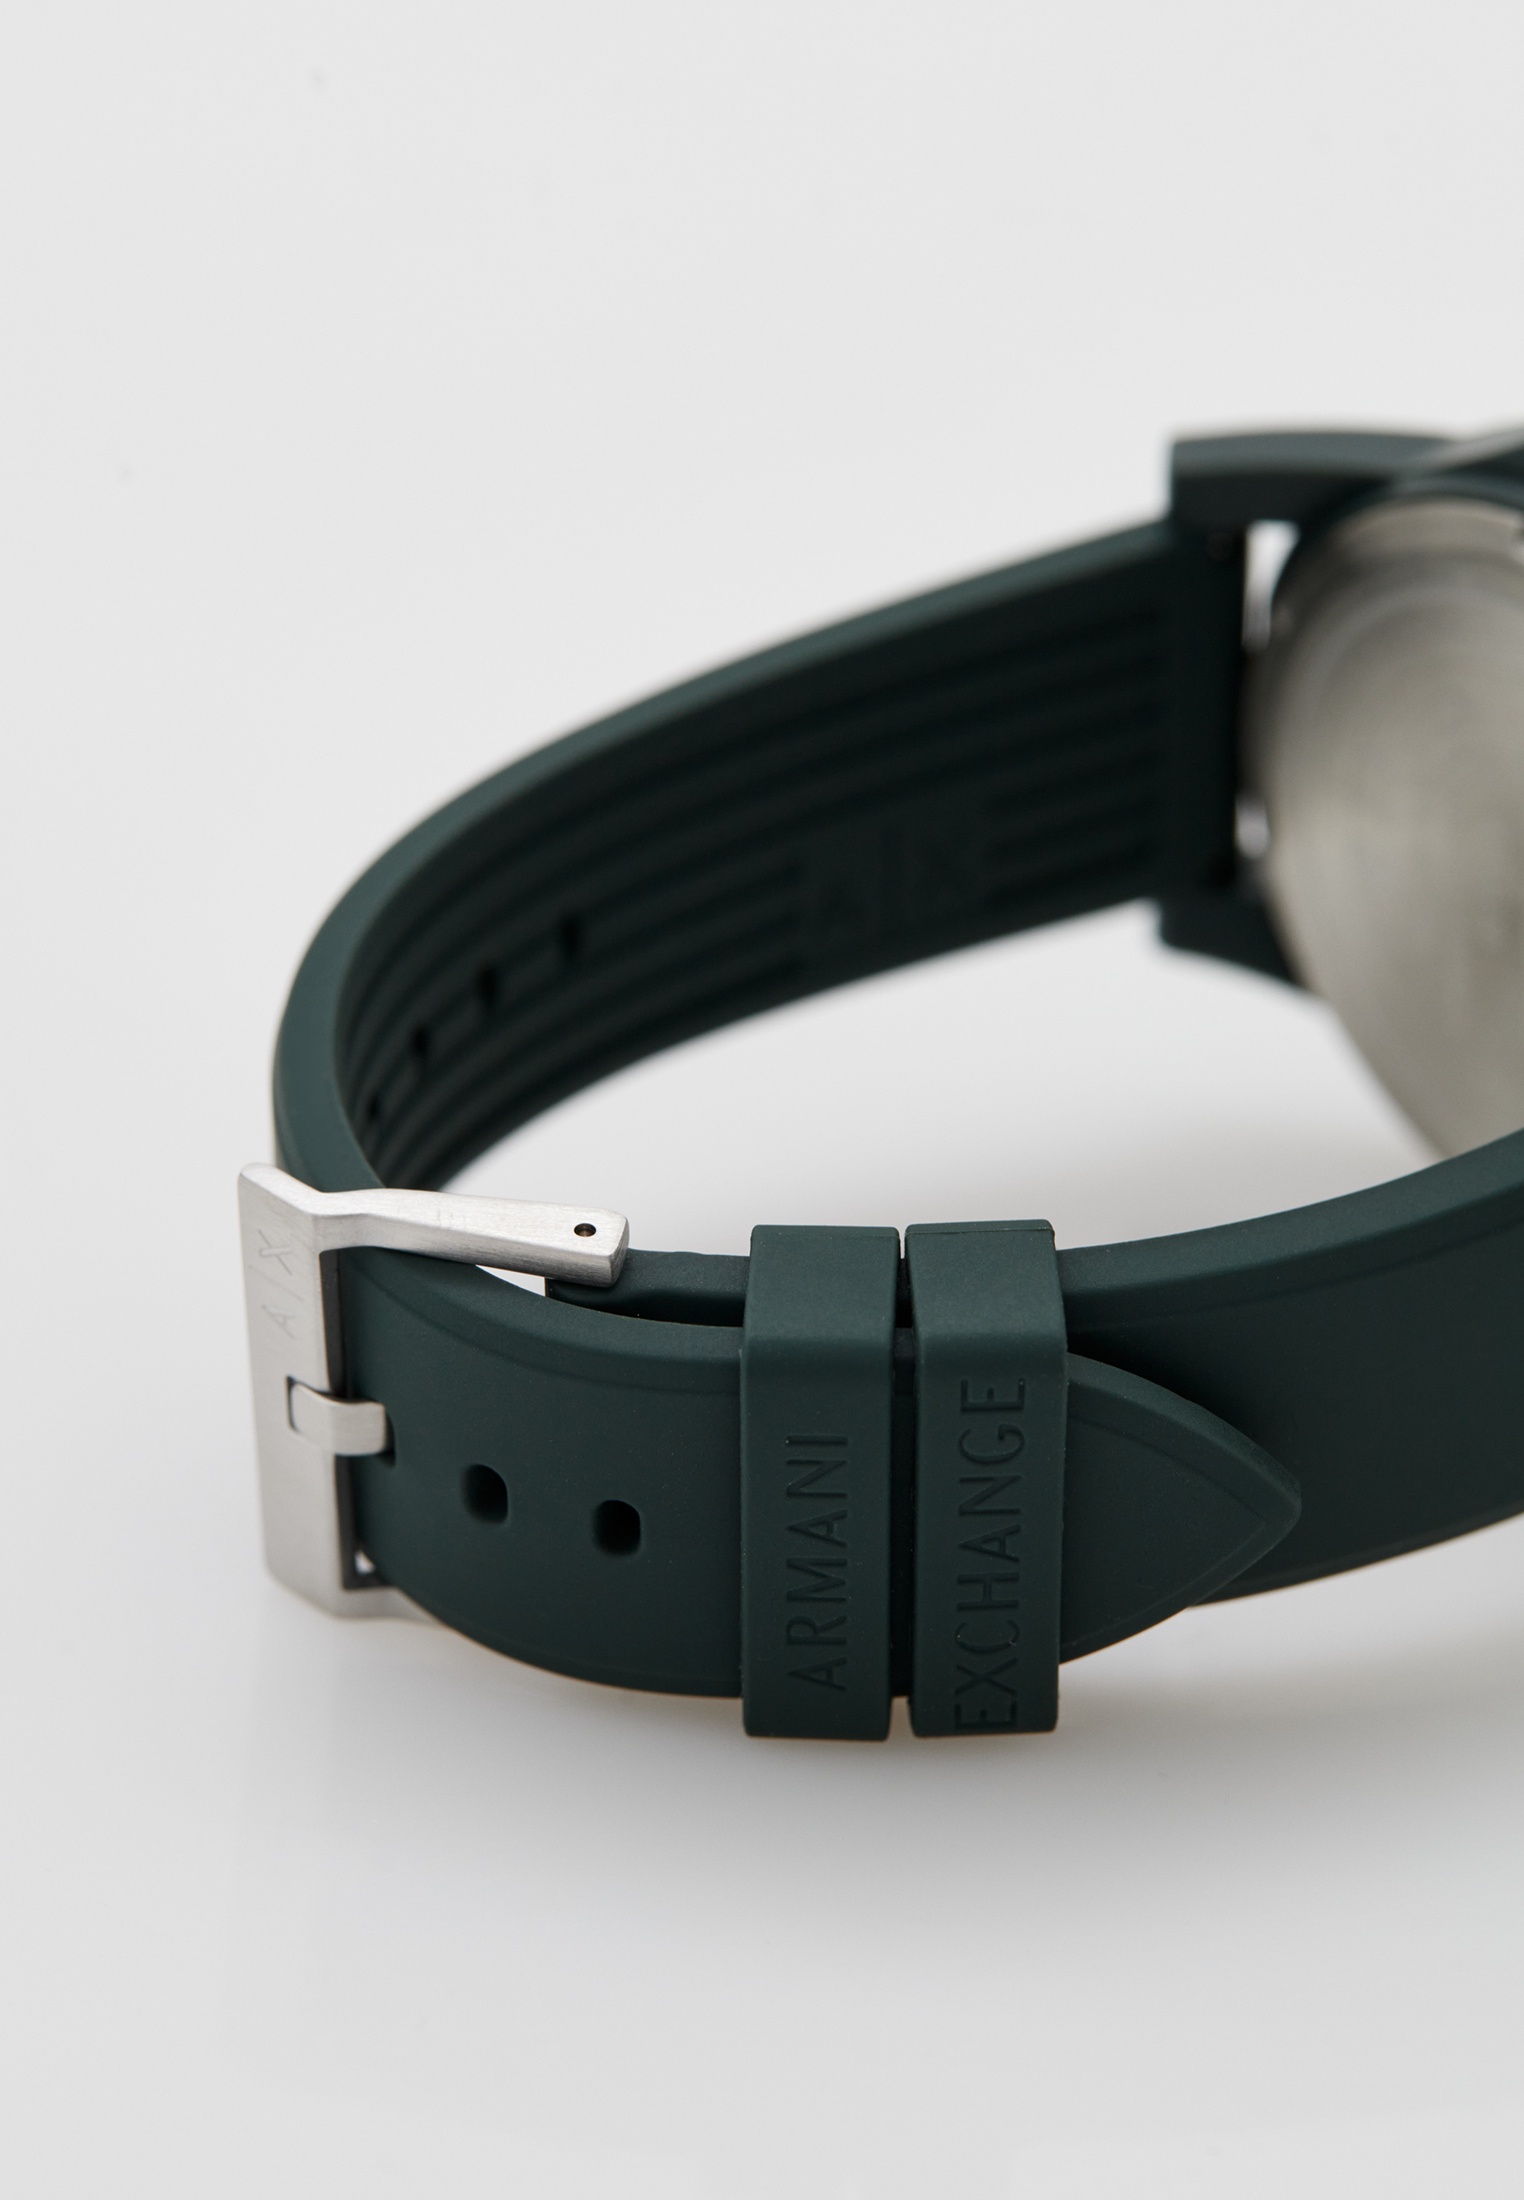 Часы Armani Exchange AX2530, цвет: зеленый, RTLACZ547501 — купить в  интернет-магазине Lamoda